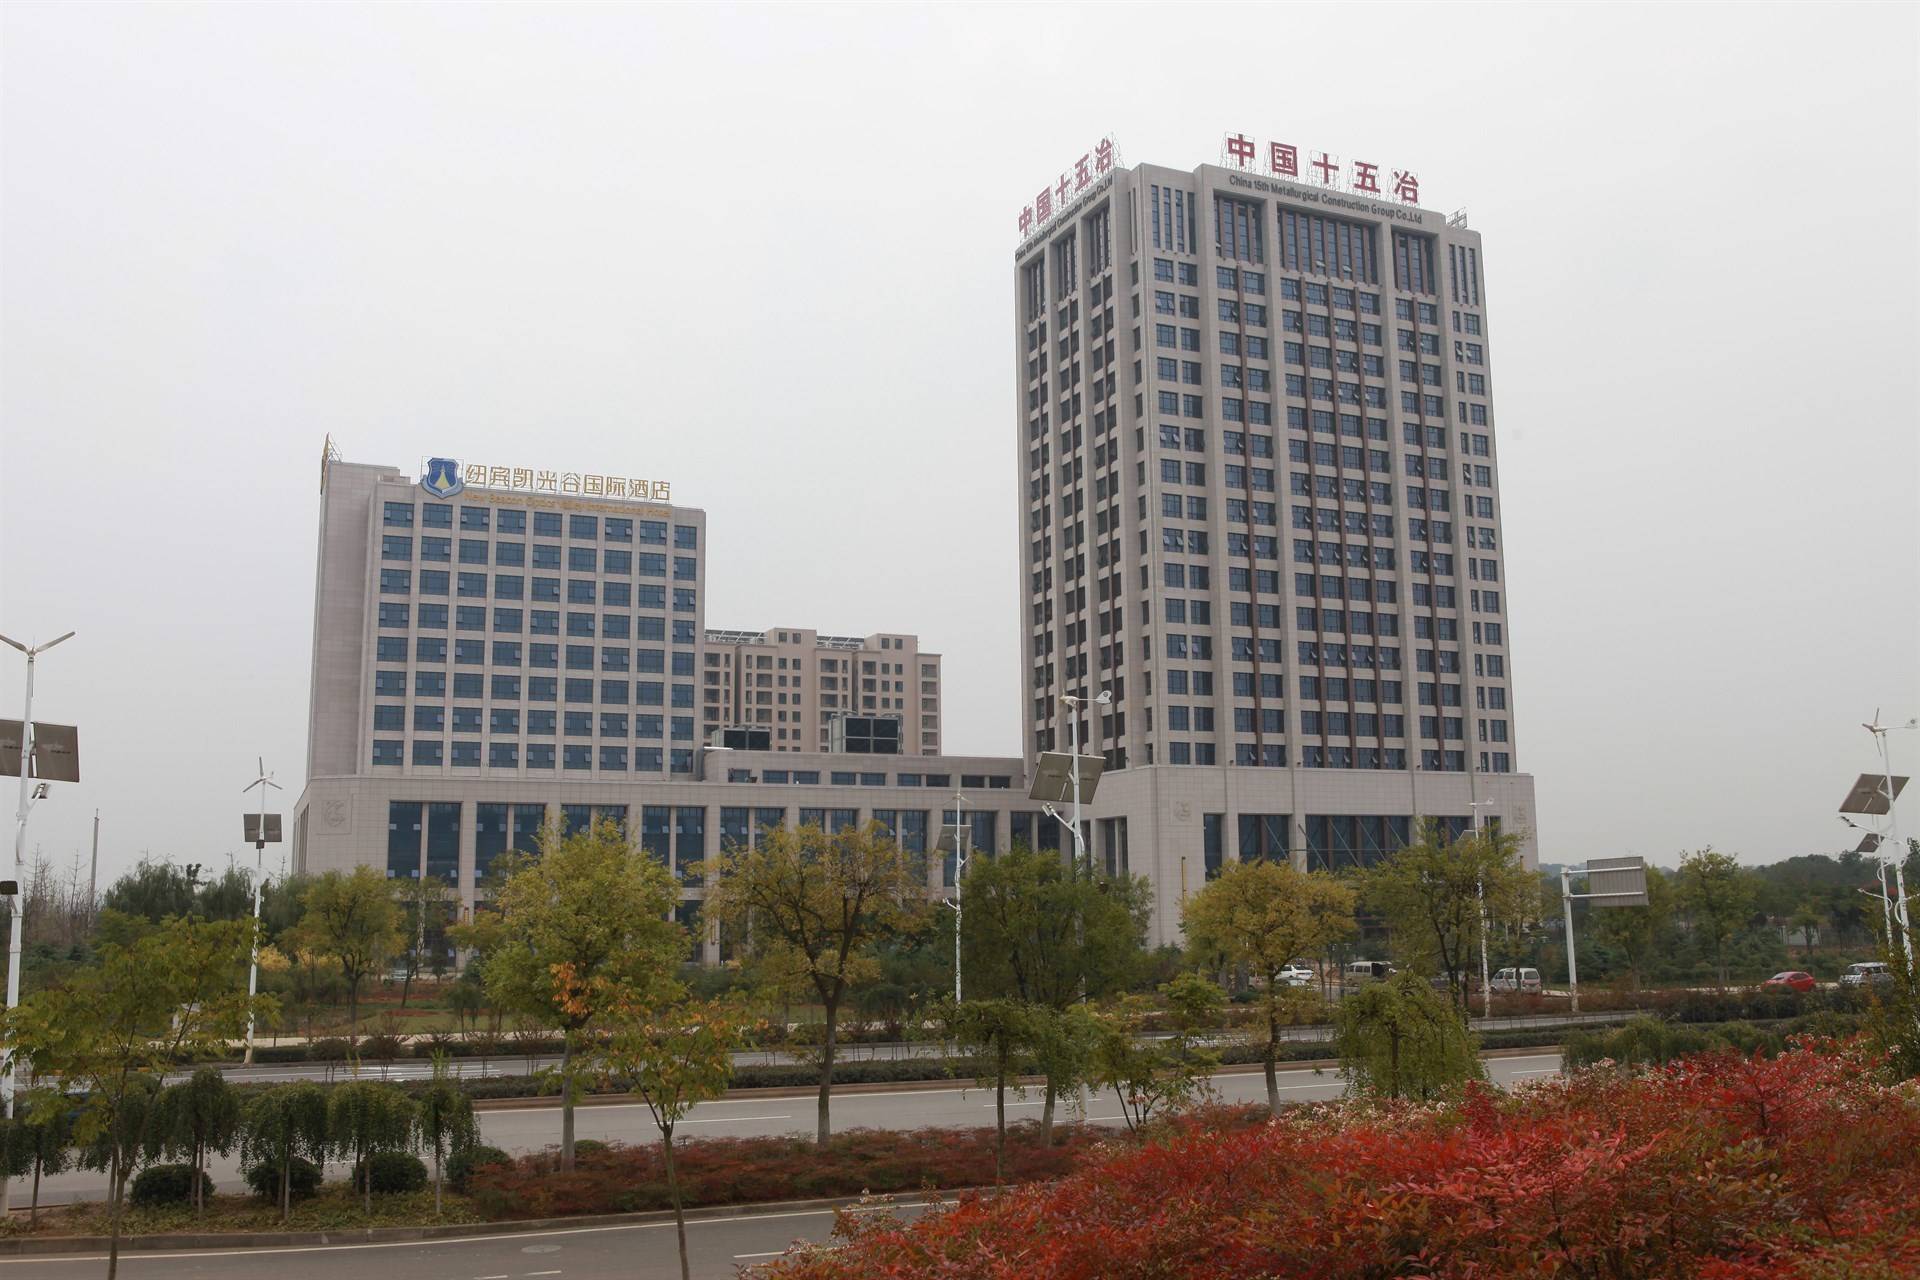  中国十五冶金建设集团有限公司的公司展示